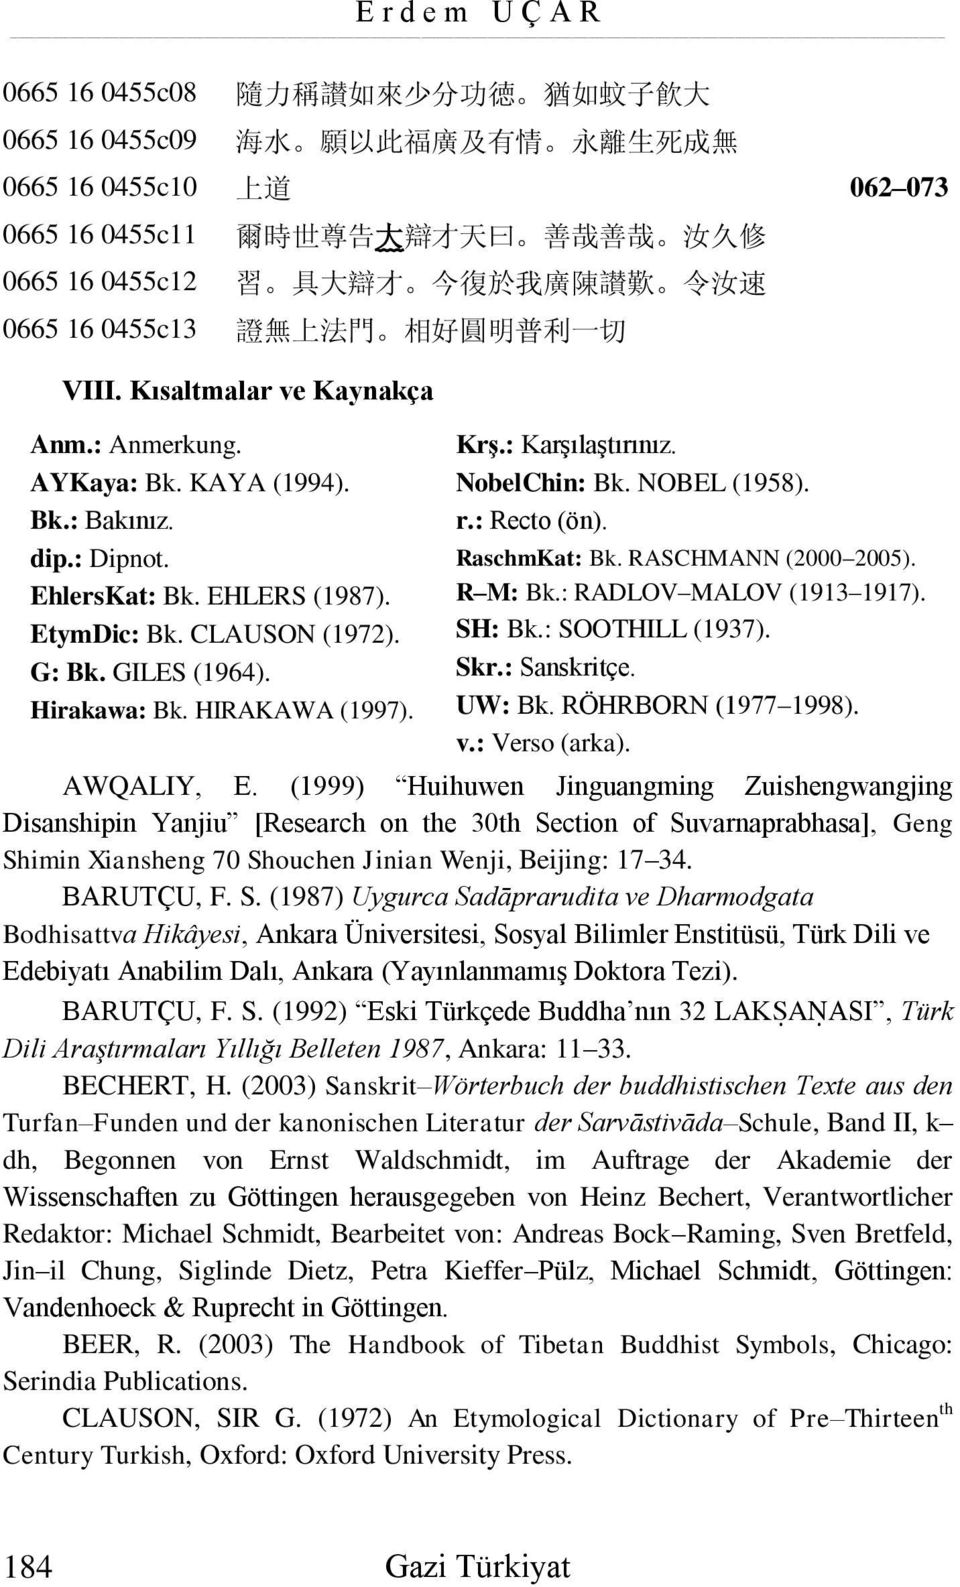 EHLERS (1987). EtymDic: Bk. CLAUSON (1972). G: Bk. GILES (1964). Hirakawa: Bk. HIRAKAWA (1997). Krş.: Karşılaştırınız. NobelChin: Bk. NOBEL (1958). r.: Recto (ön). RaschmKat: Bk.